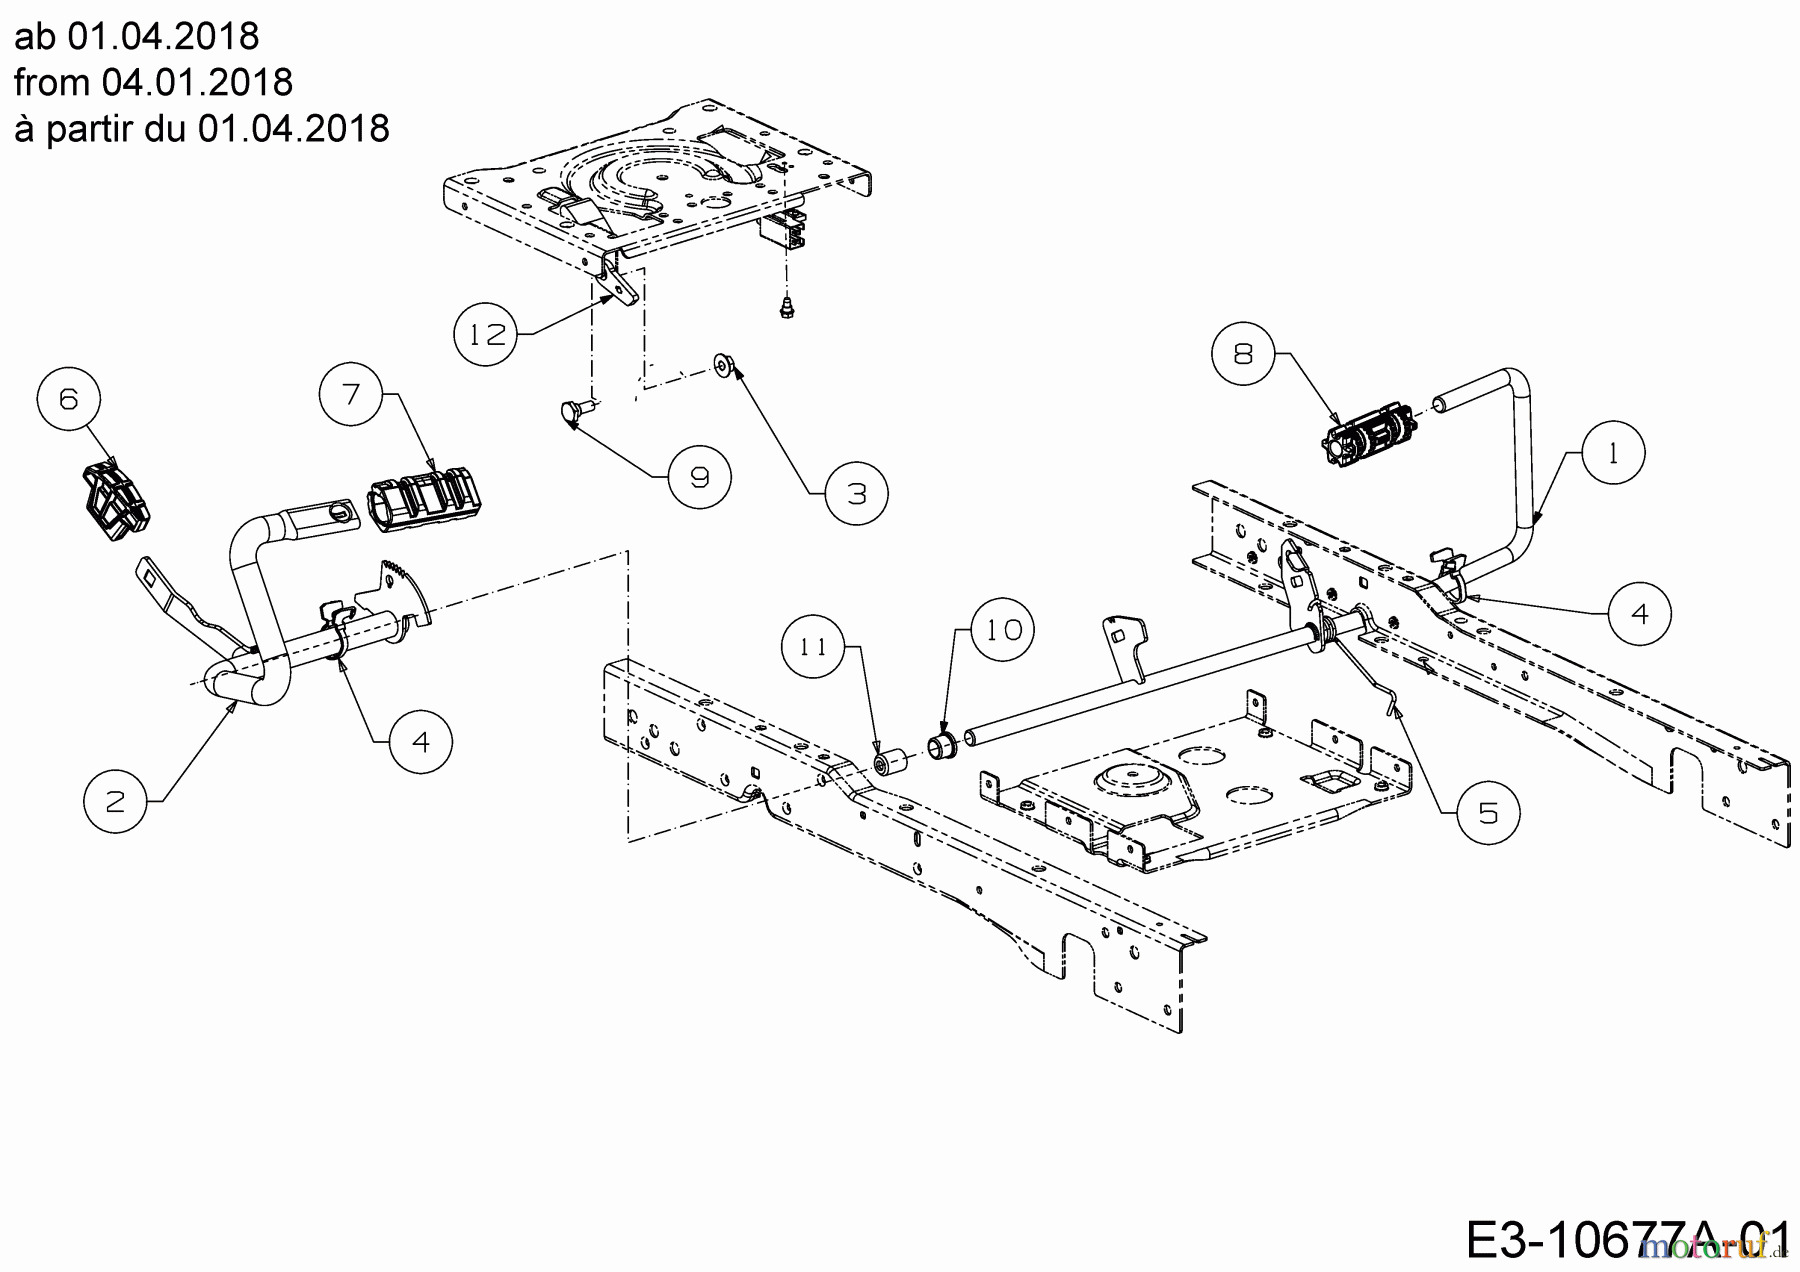  Cub Cadet Lawn tractors XT2 PS107 13BGA1CS603  (2019) Pedals from 04.01.2018